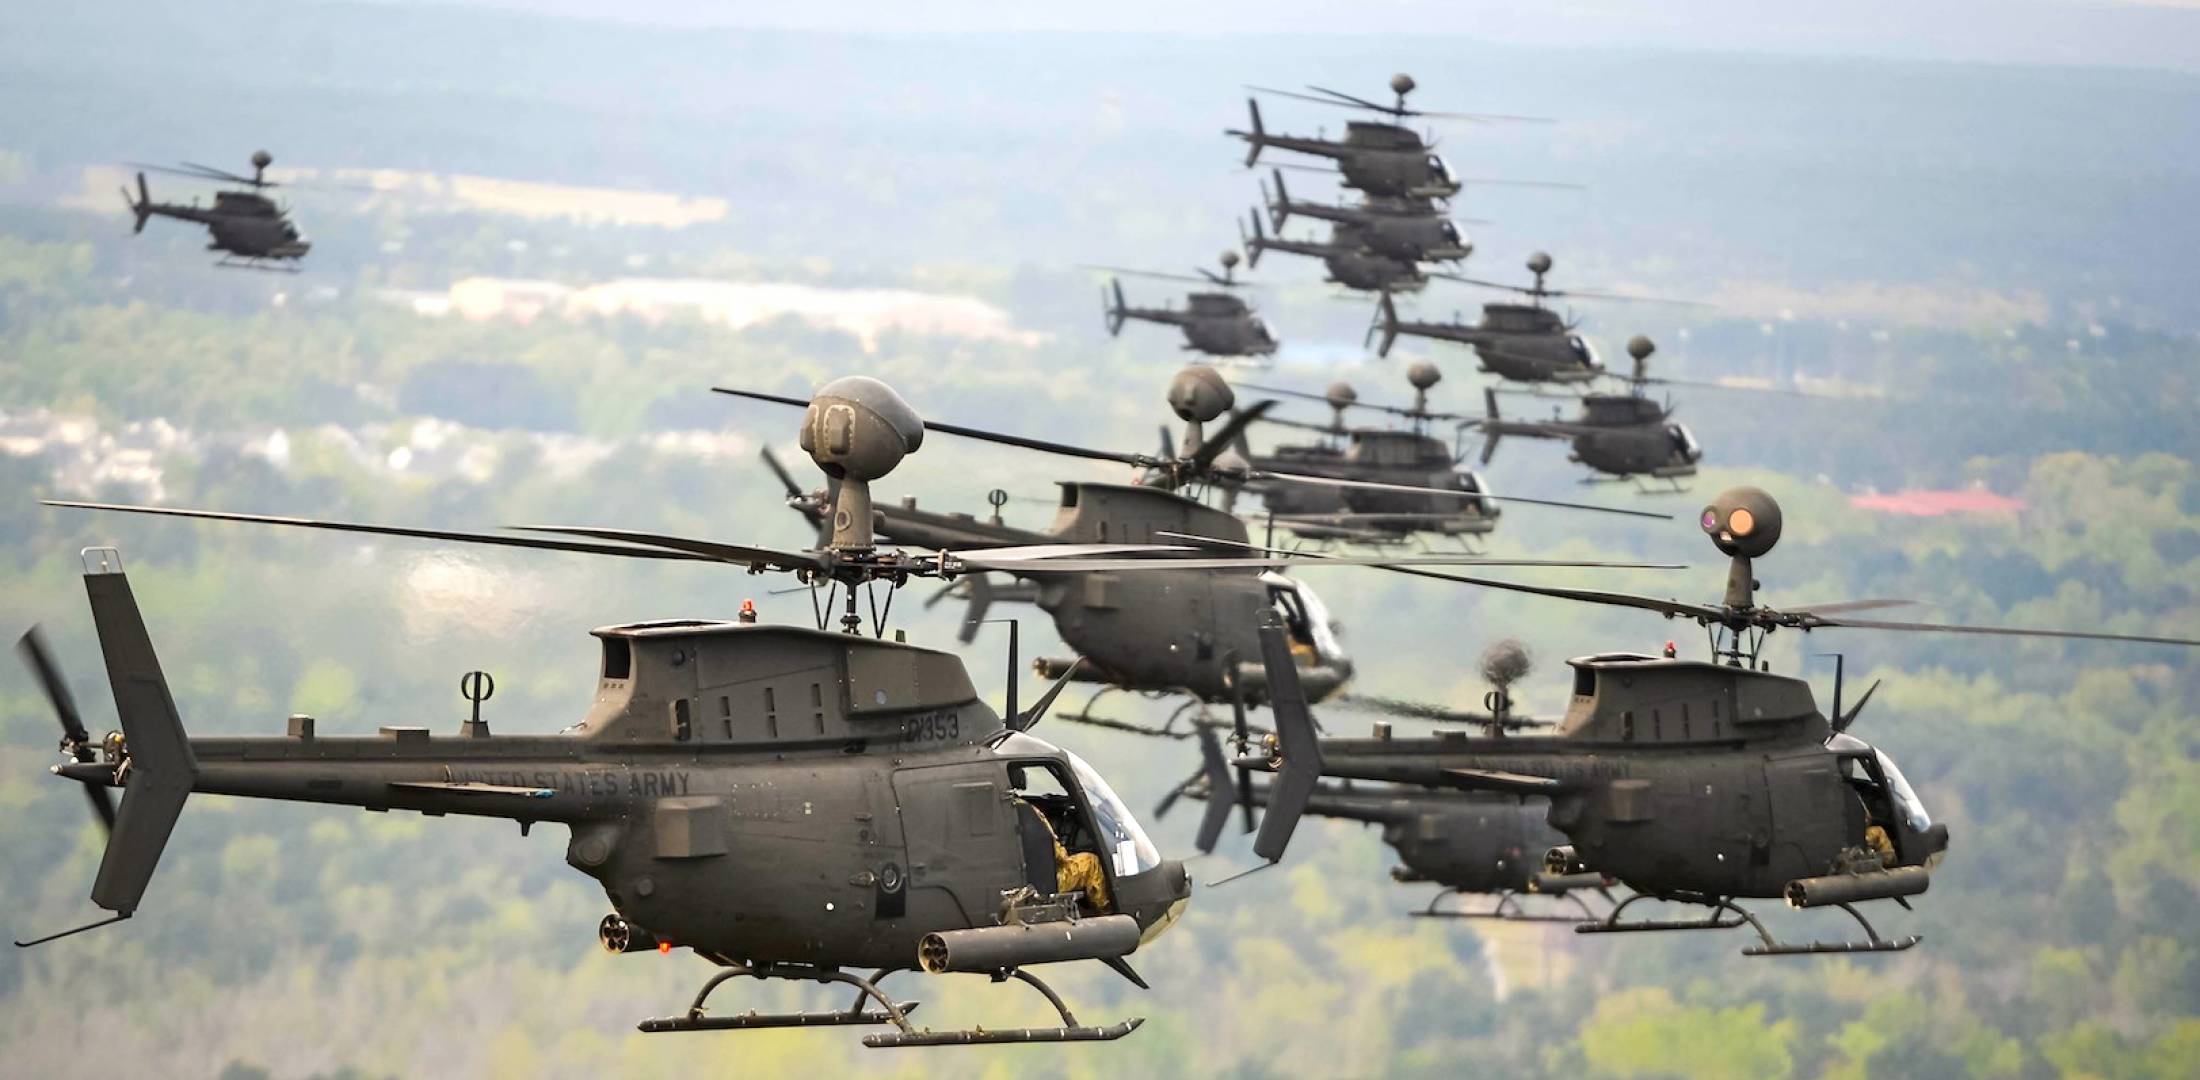 Τα αμερικανικά ελικόπτερα που έφτασαν στο Βόλο και σε χέρια Ελλήνων πιλότων  - ΤΑ ΝΕΑ